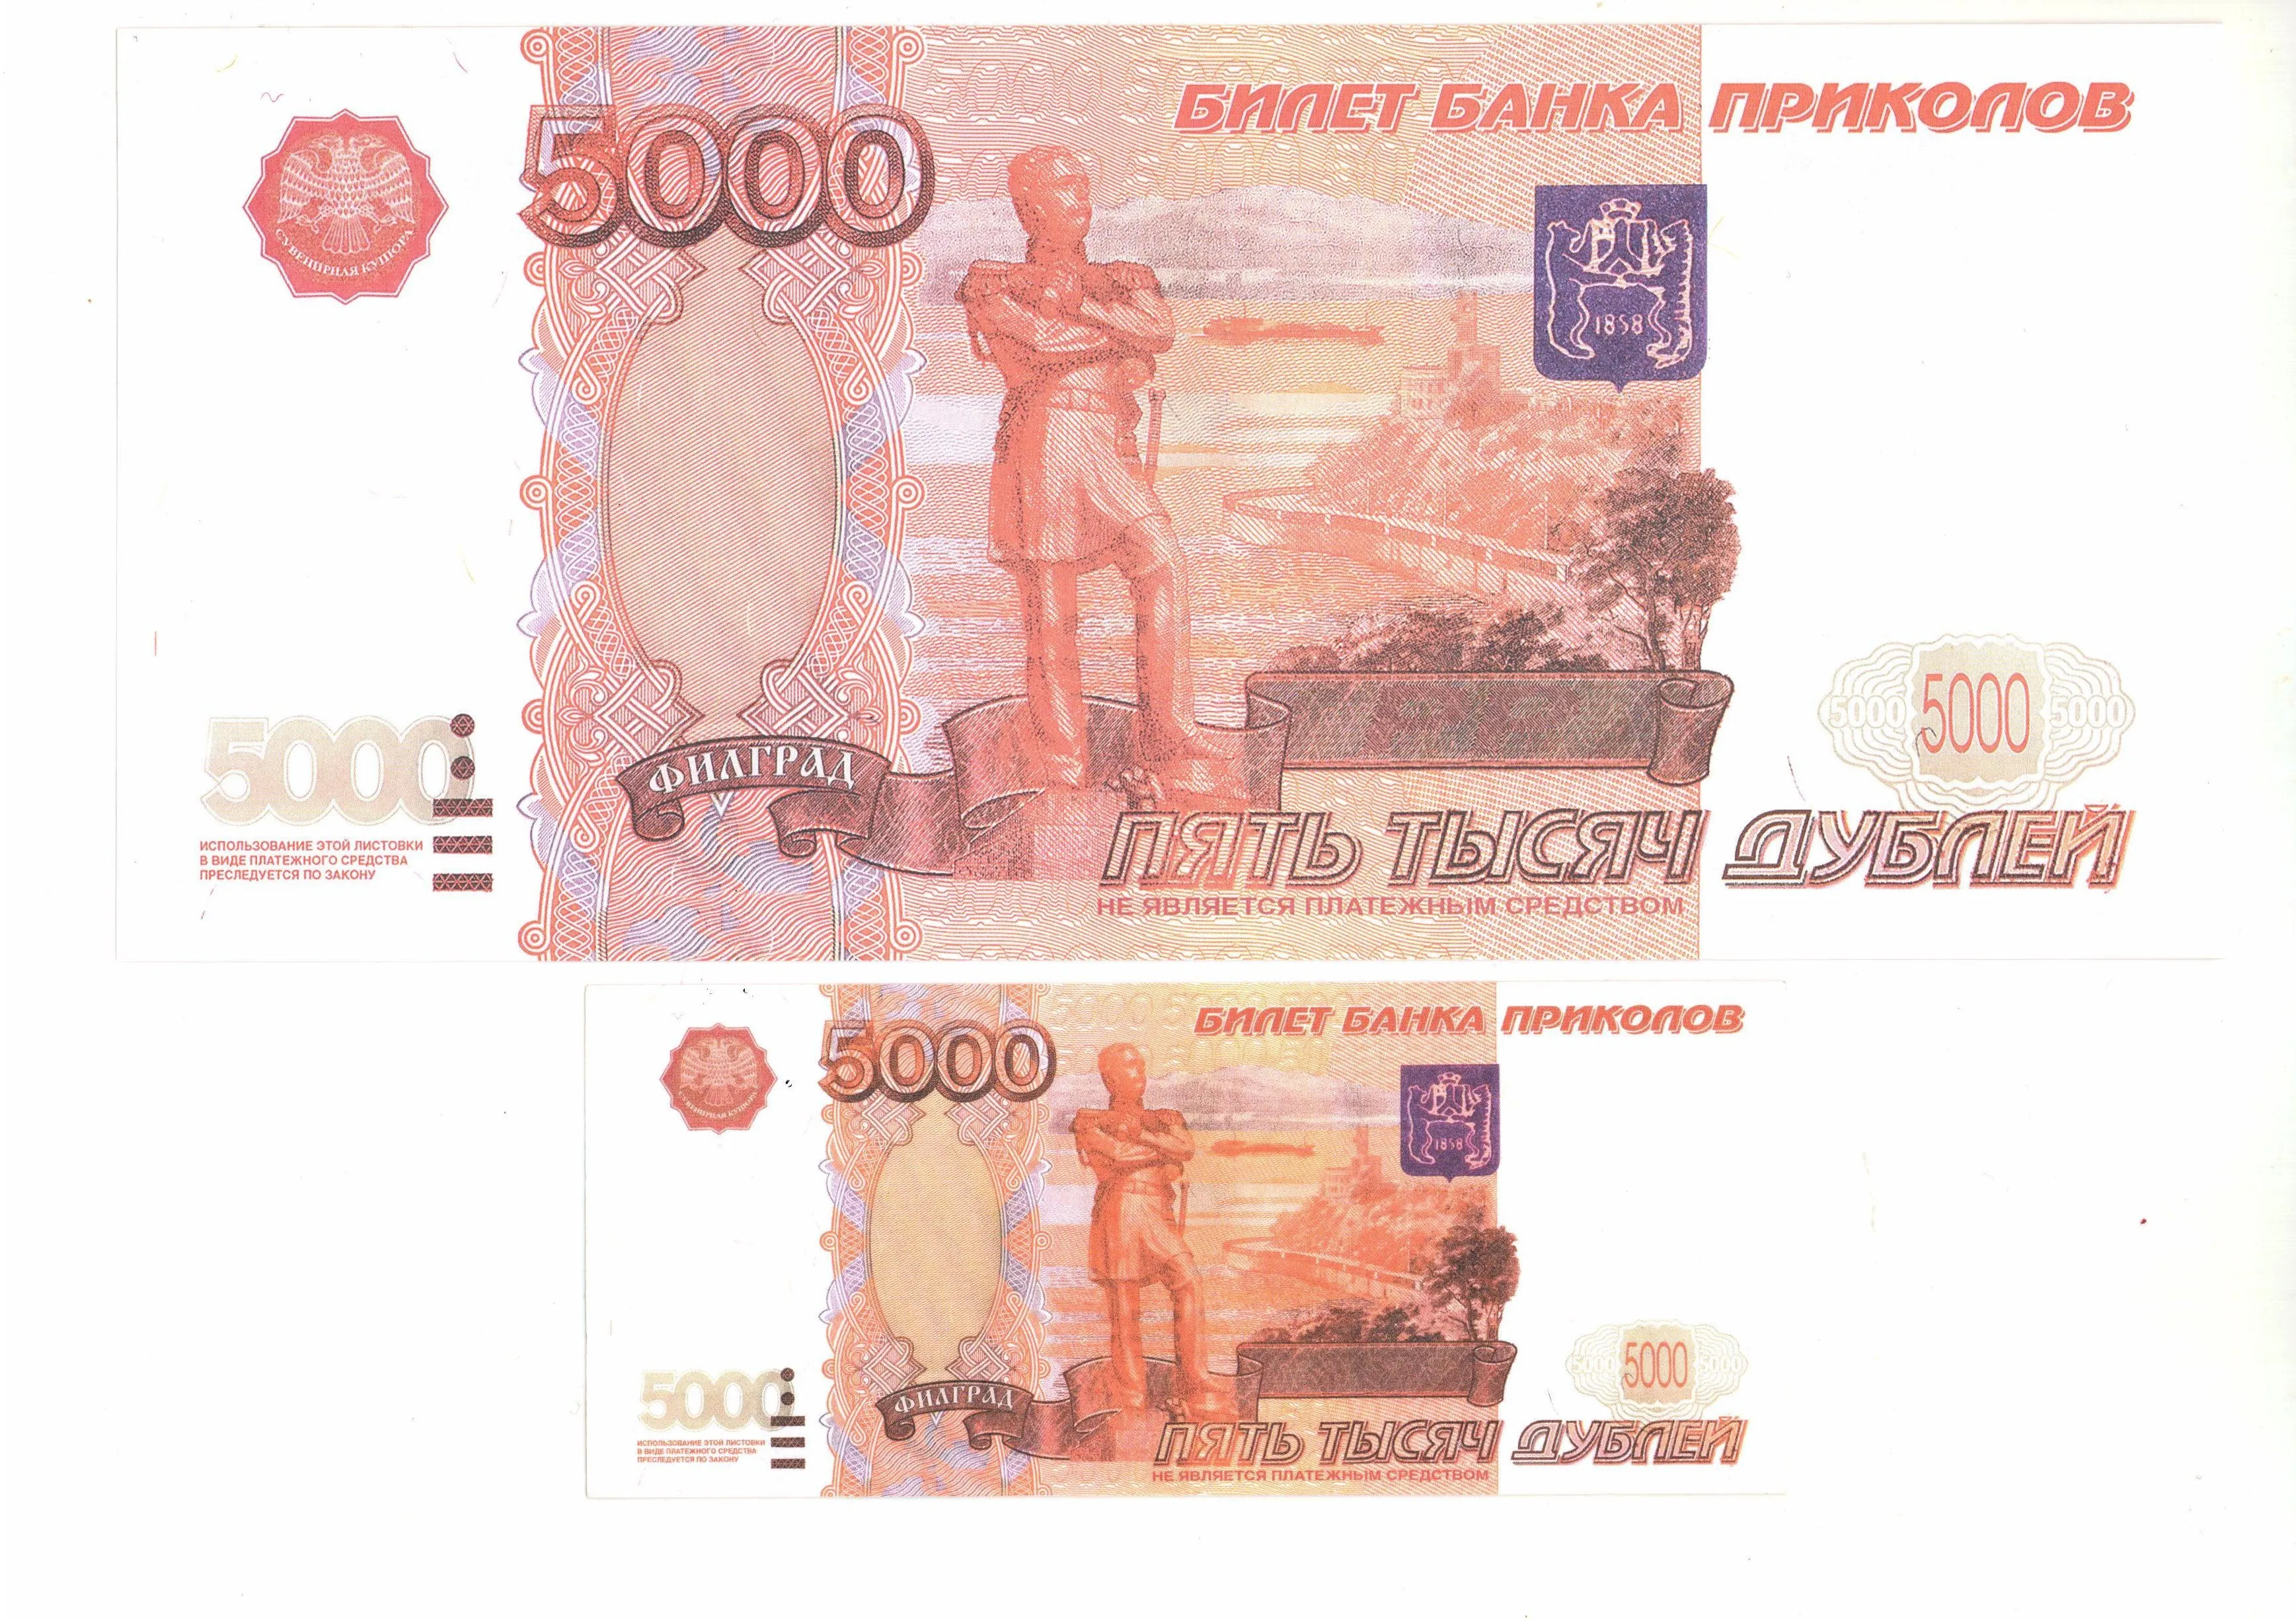 5000 000 рублей. 5000 Банк приколов. Купюра 5000 рублей. 5000 Рублей банка приколов. 5000 Рублей билет банка приколов.